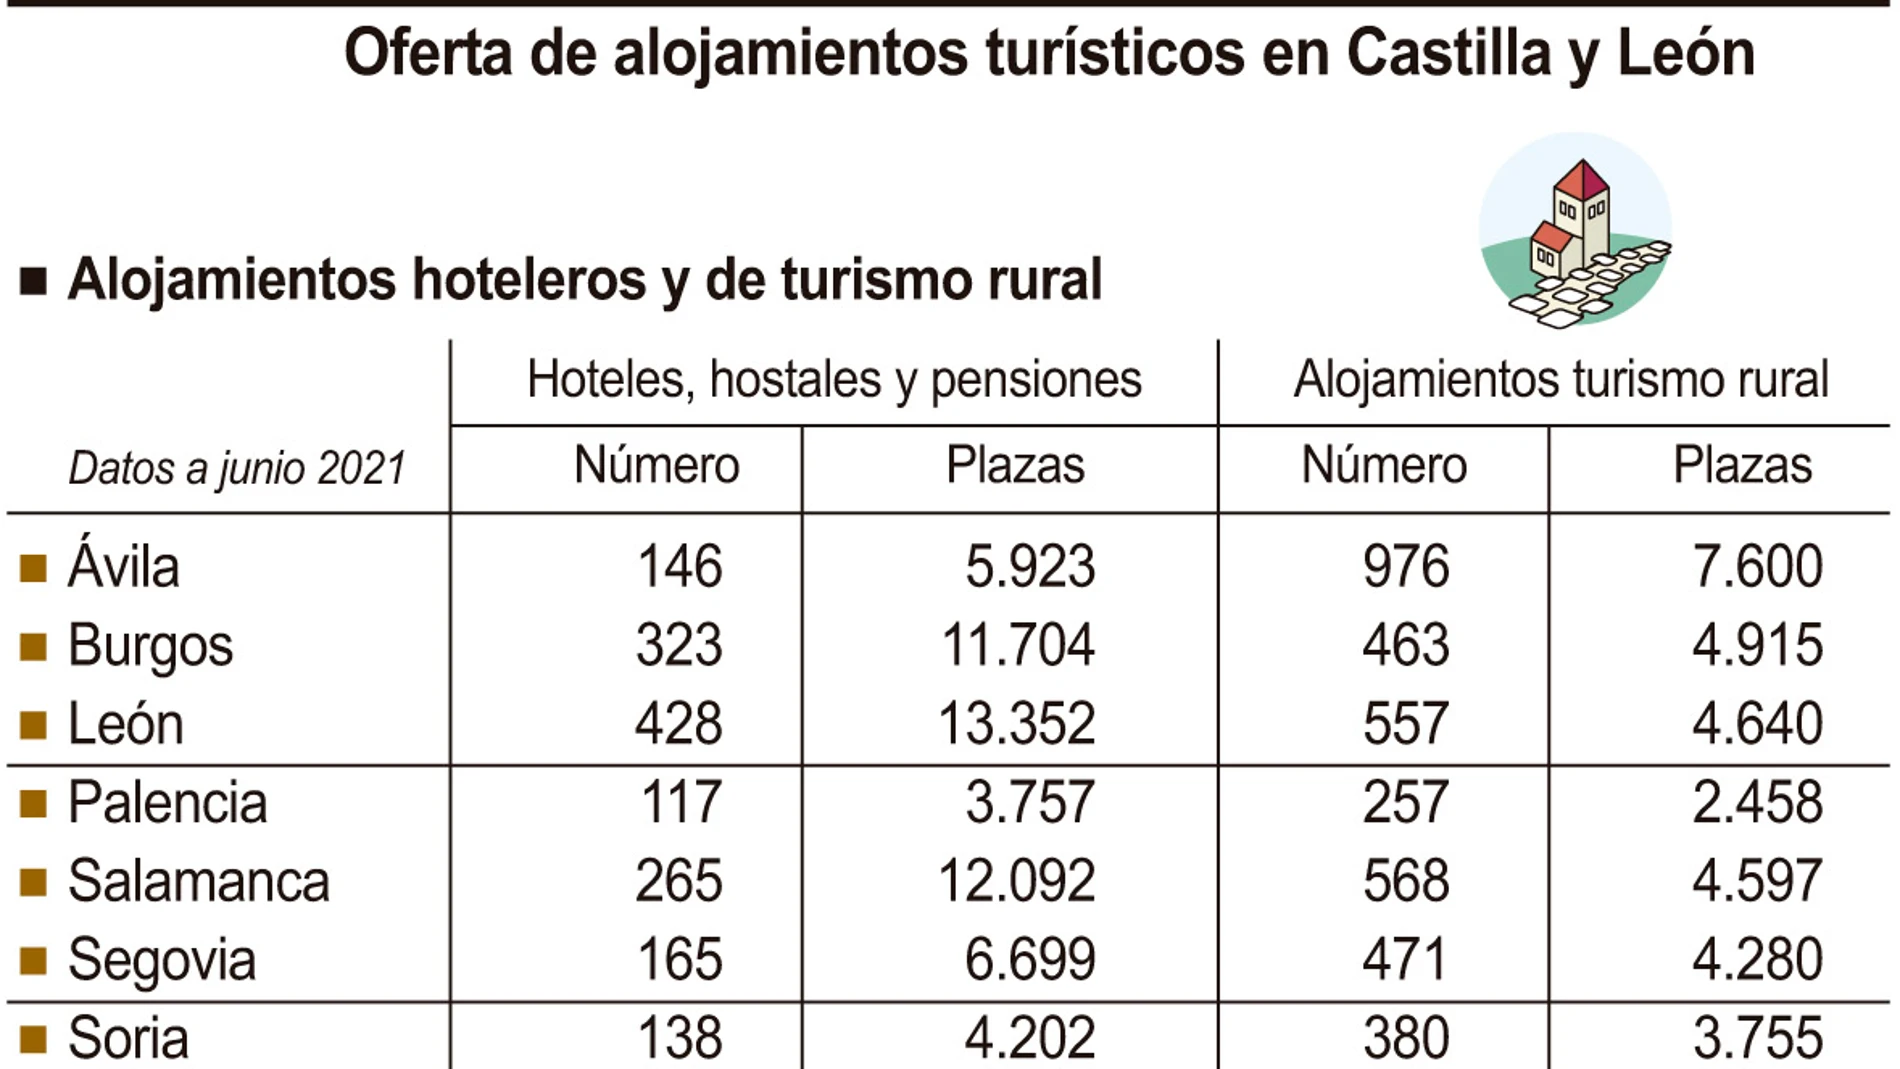 Oferta de alojamientos turísticos en Castilla y León